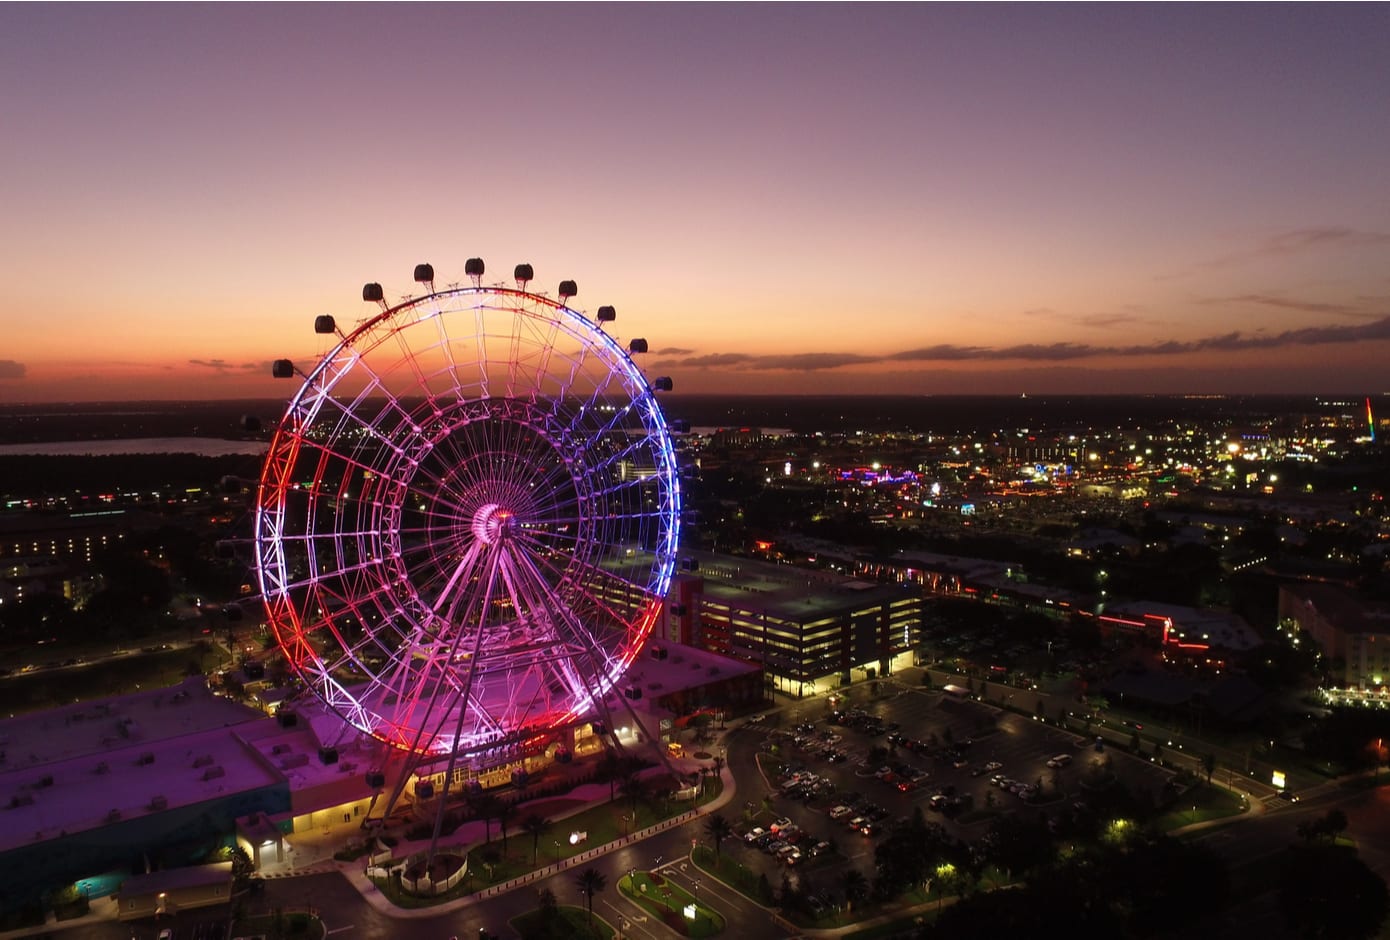 The Ferris Wheel, at ICON Park, Orlando, Florida.